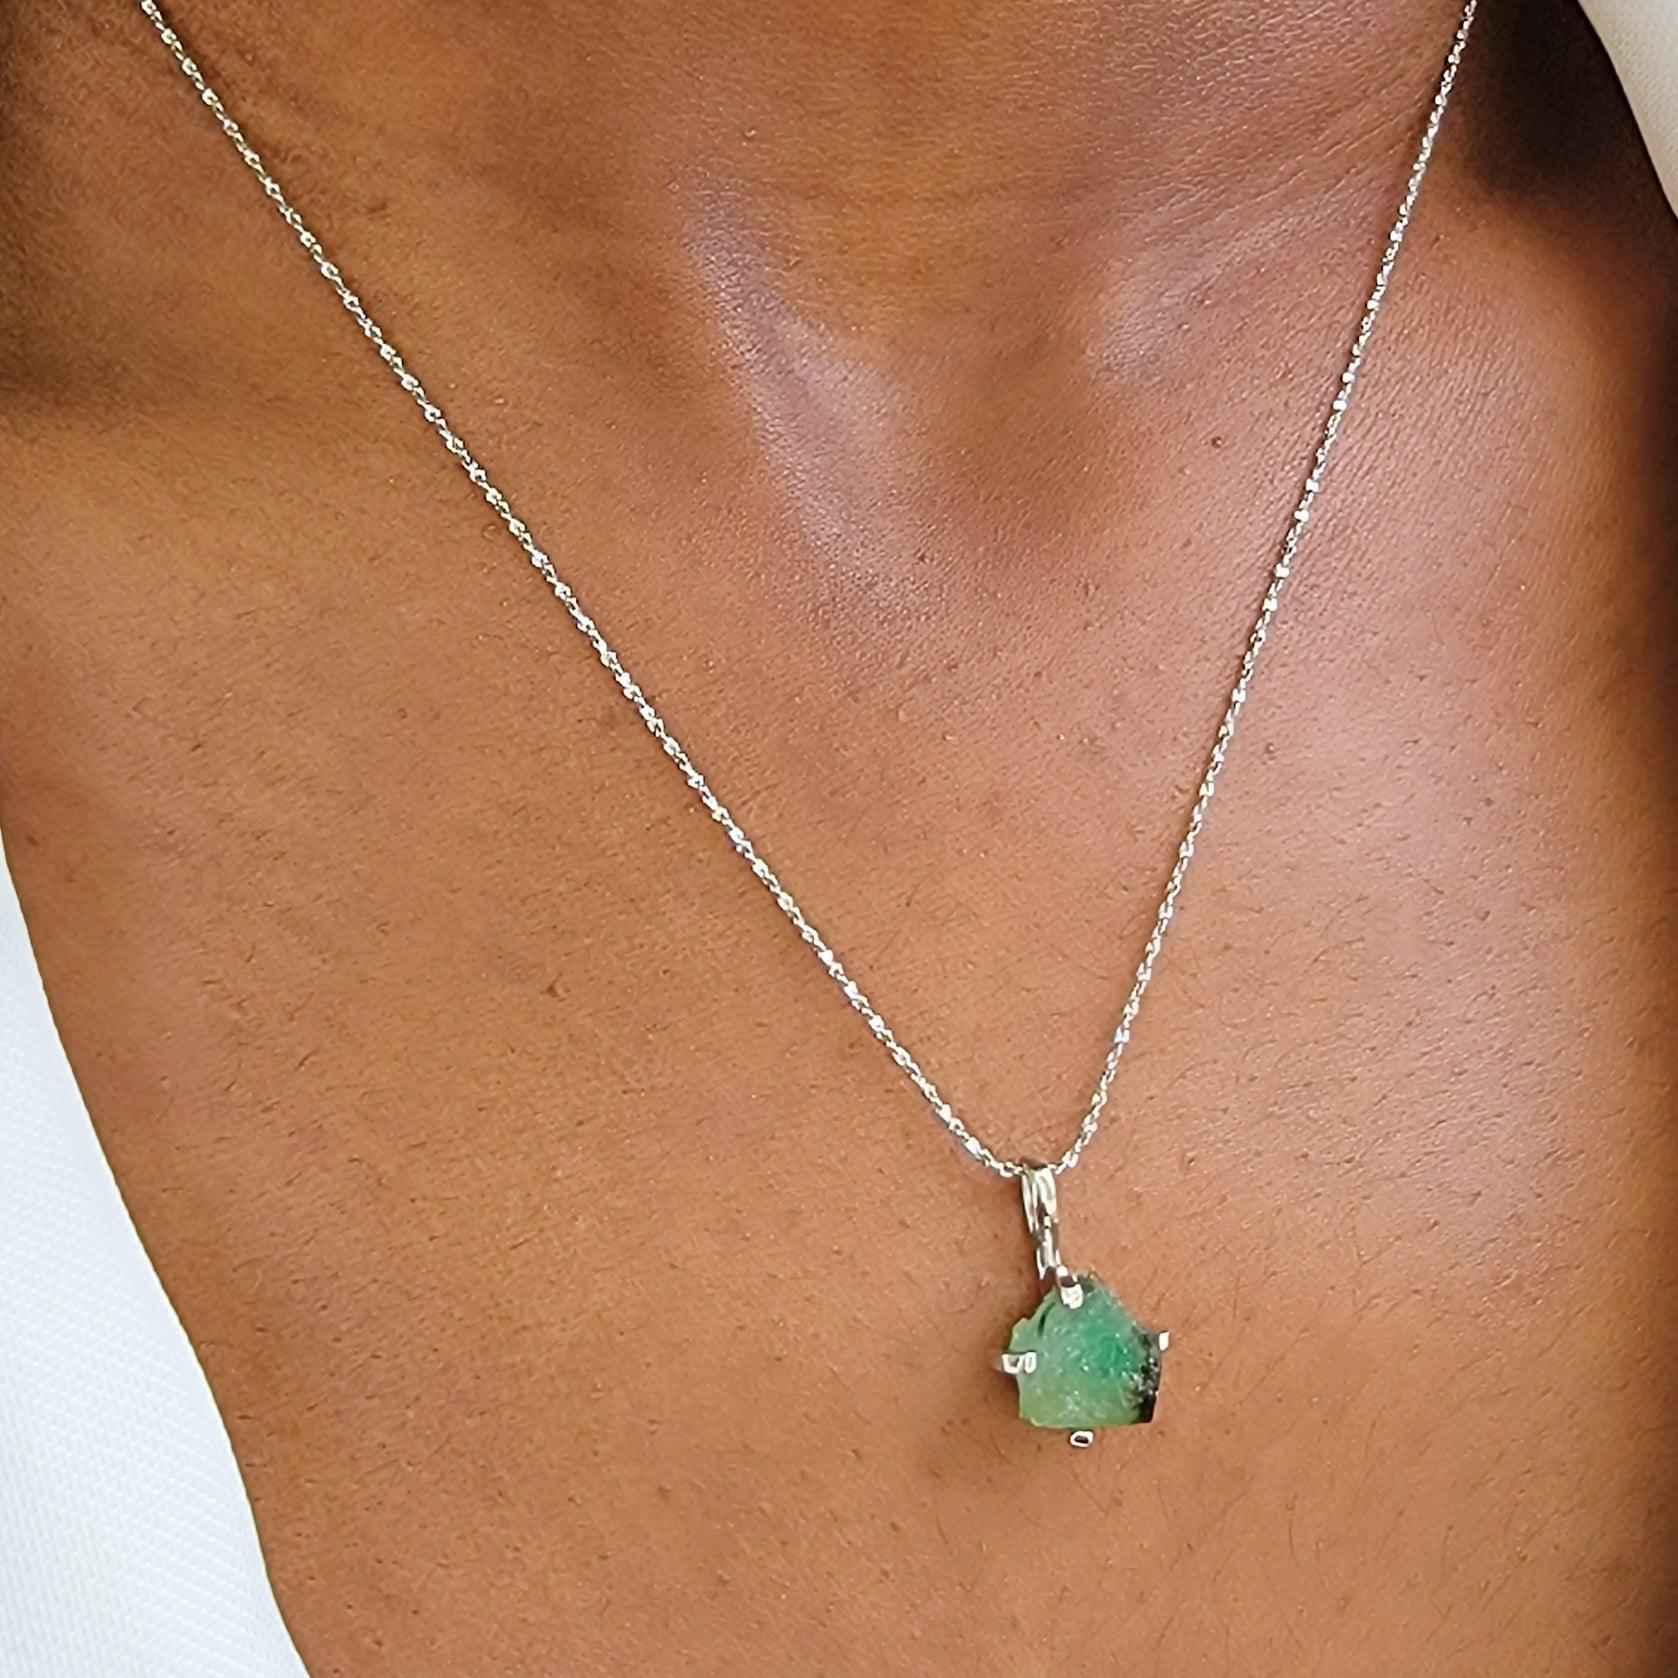 Raw Zambia Emerald Pendant Necklace - Uniquelan Jewelry